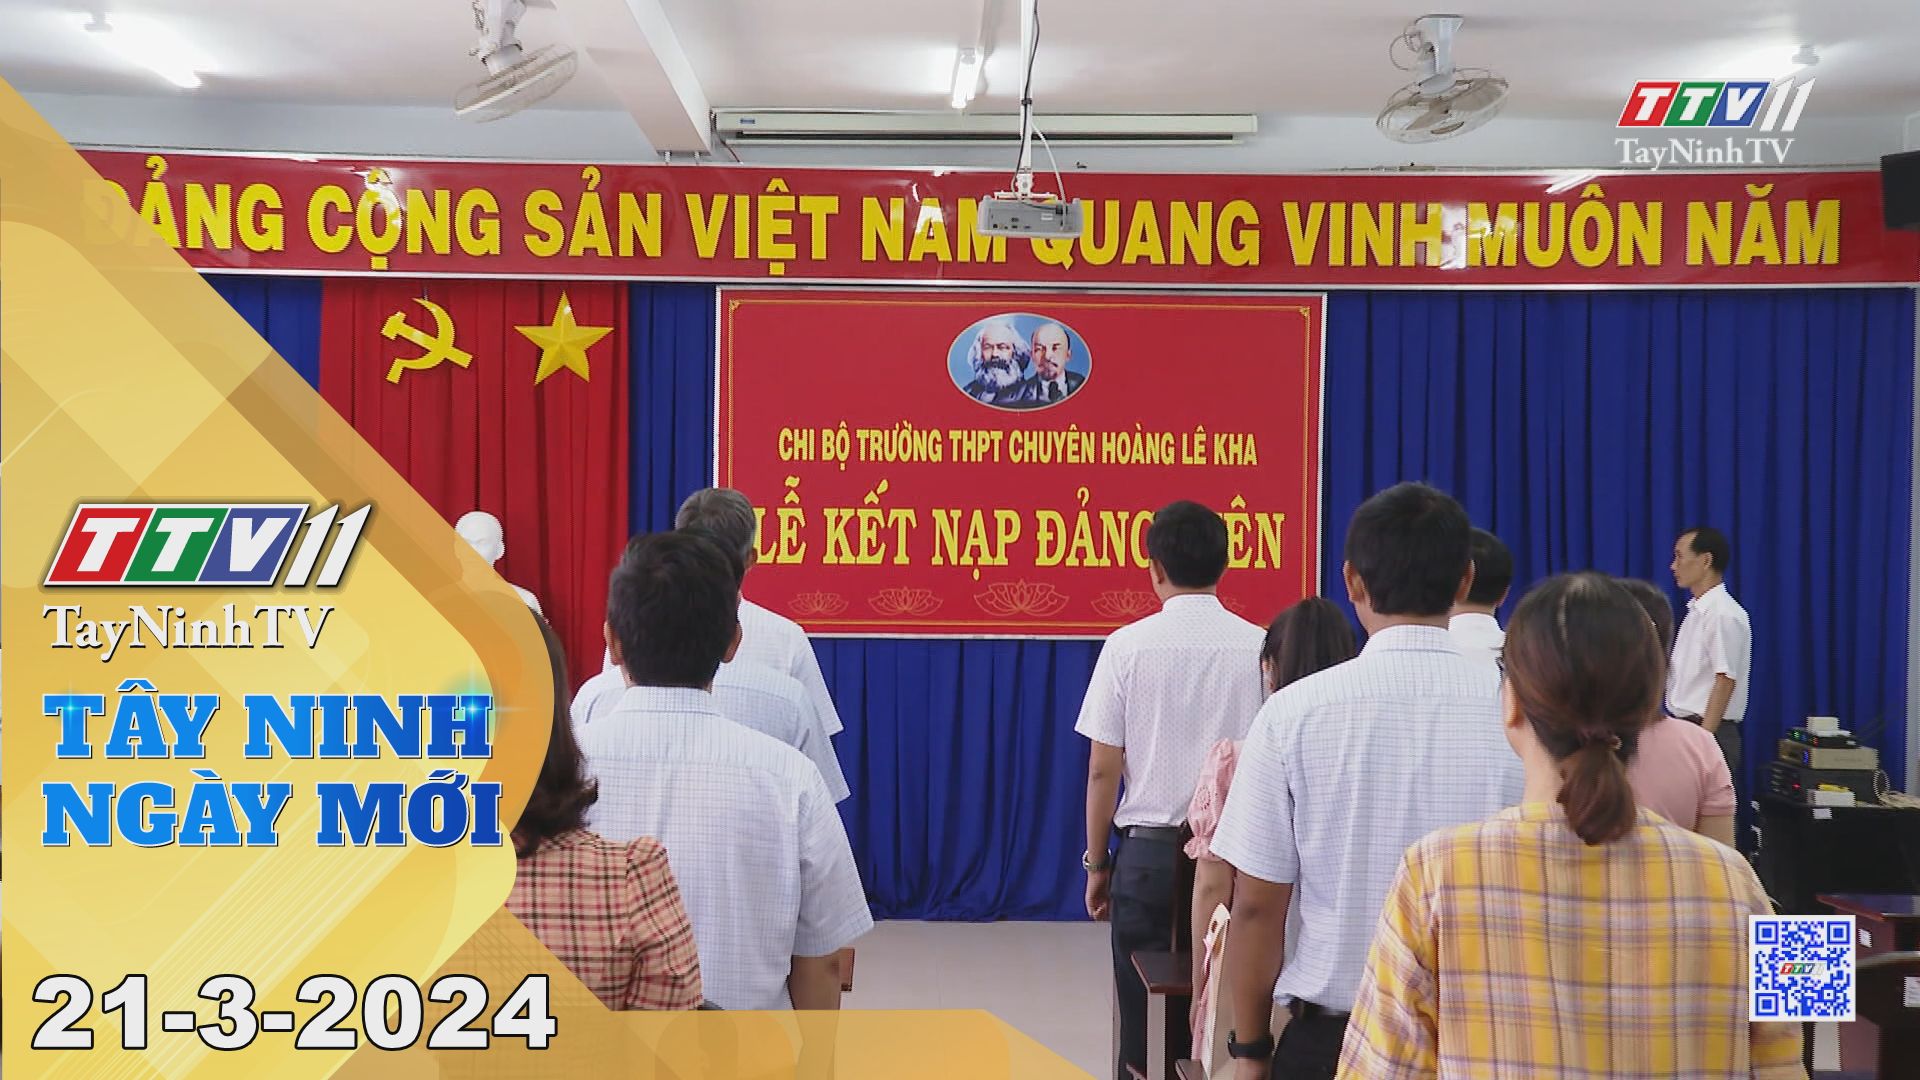 Tây Ninh ngày mới 21-3-2024 | Tin tức hôm nay | TayNinhTV